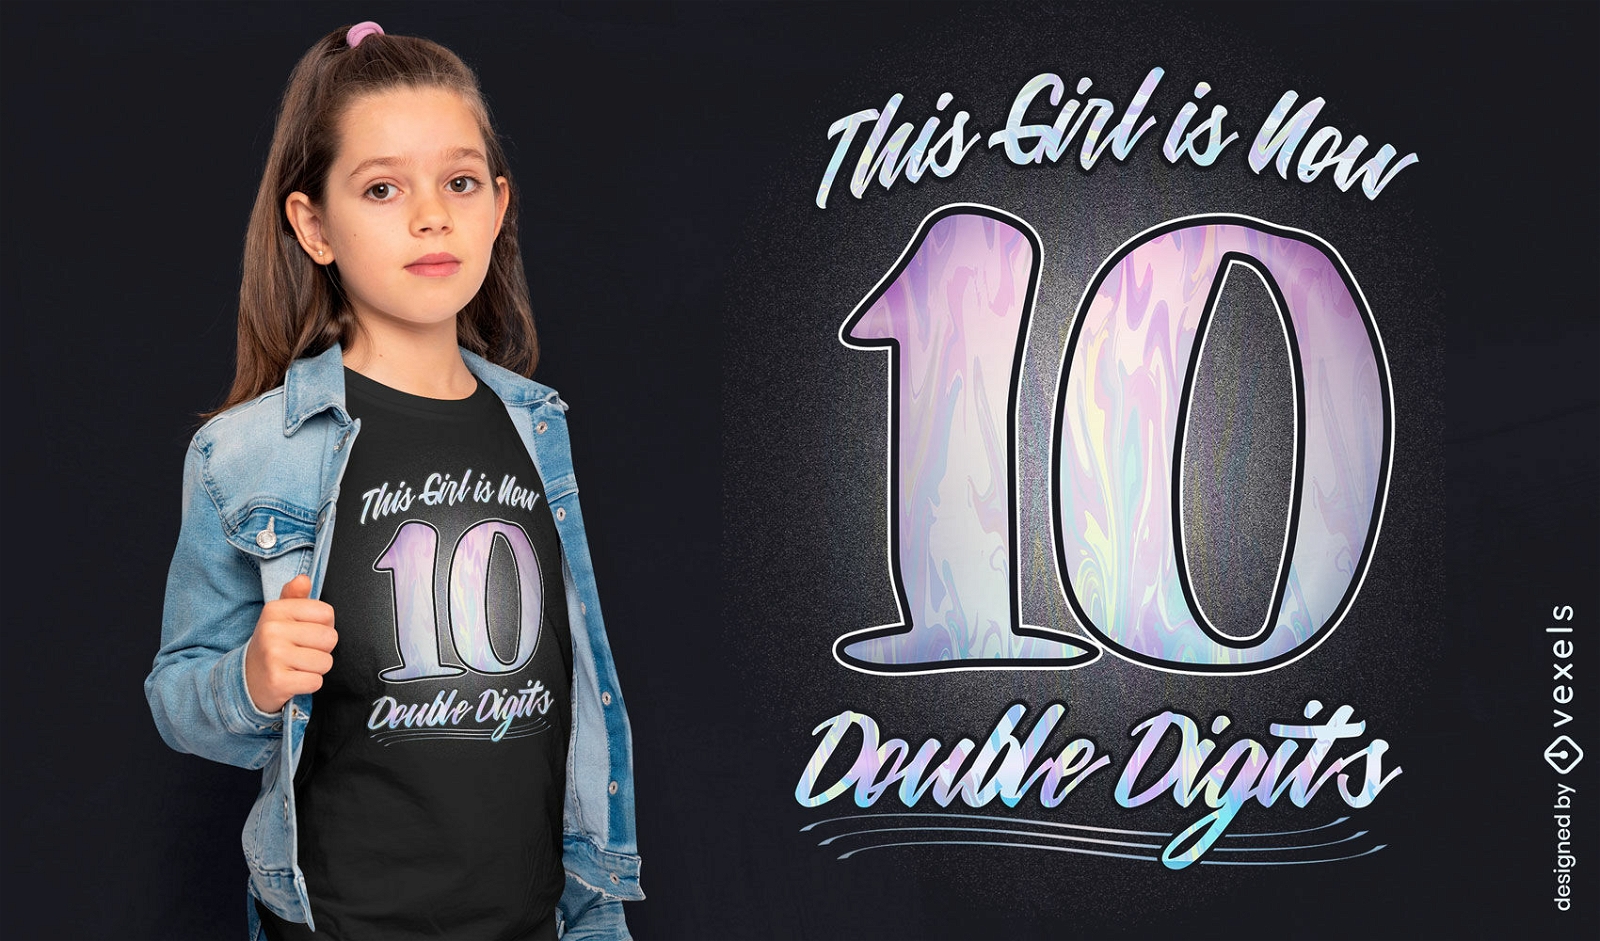 Tenth birthday girl cool t-shirt psd